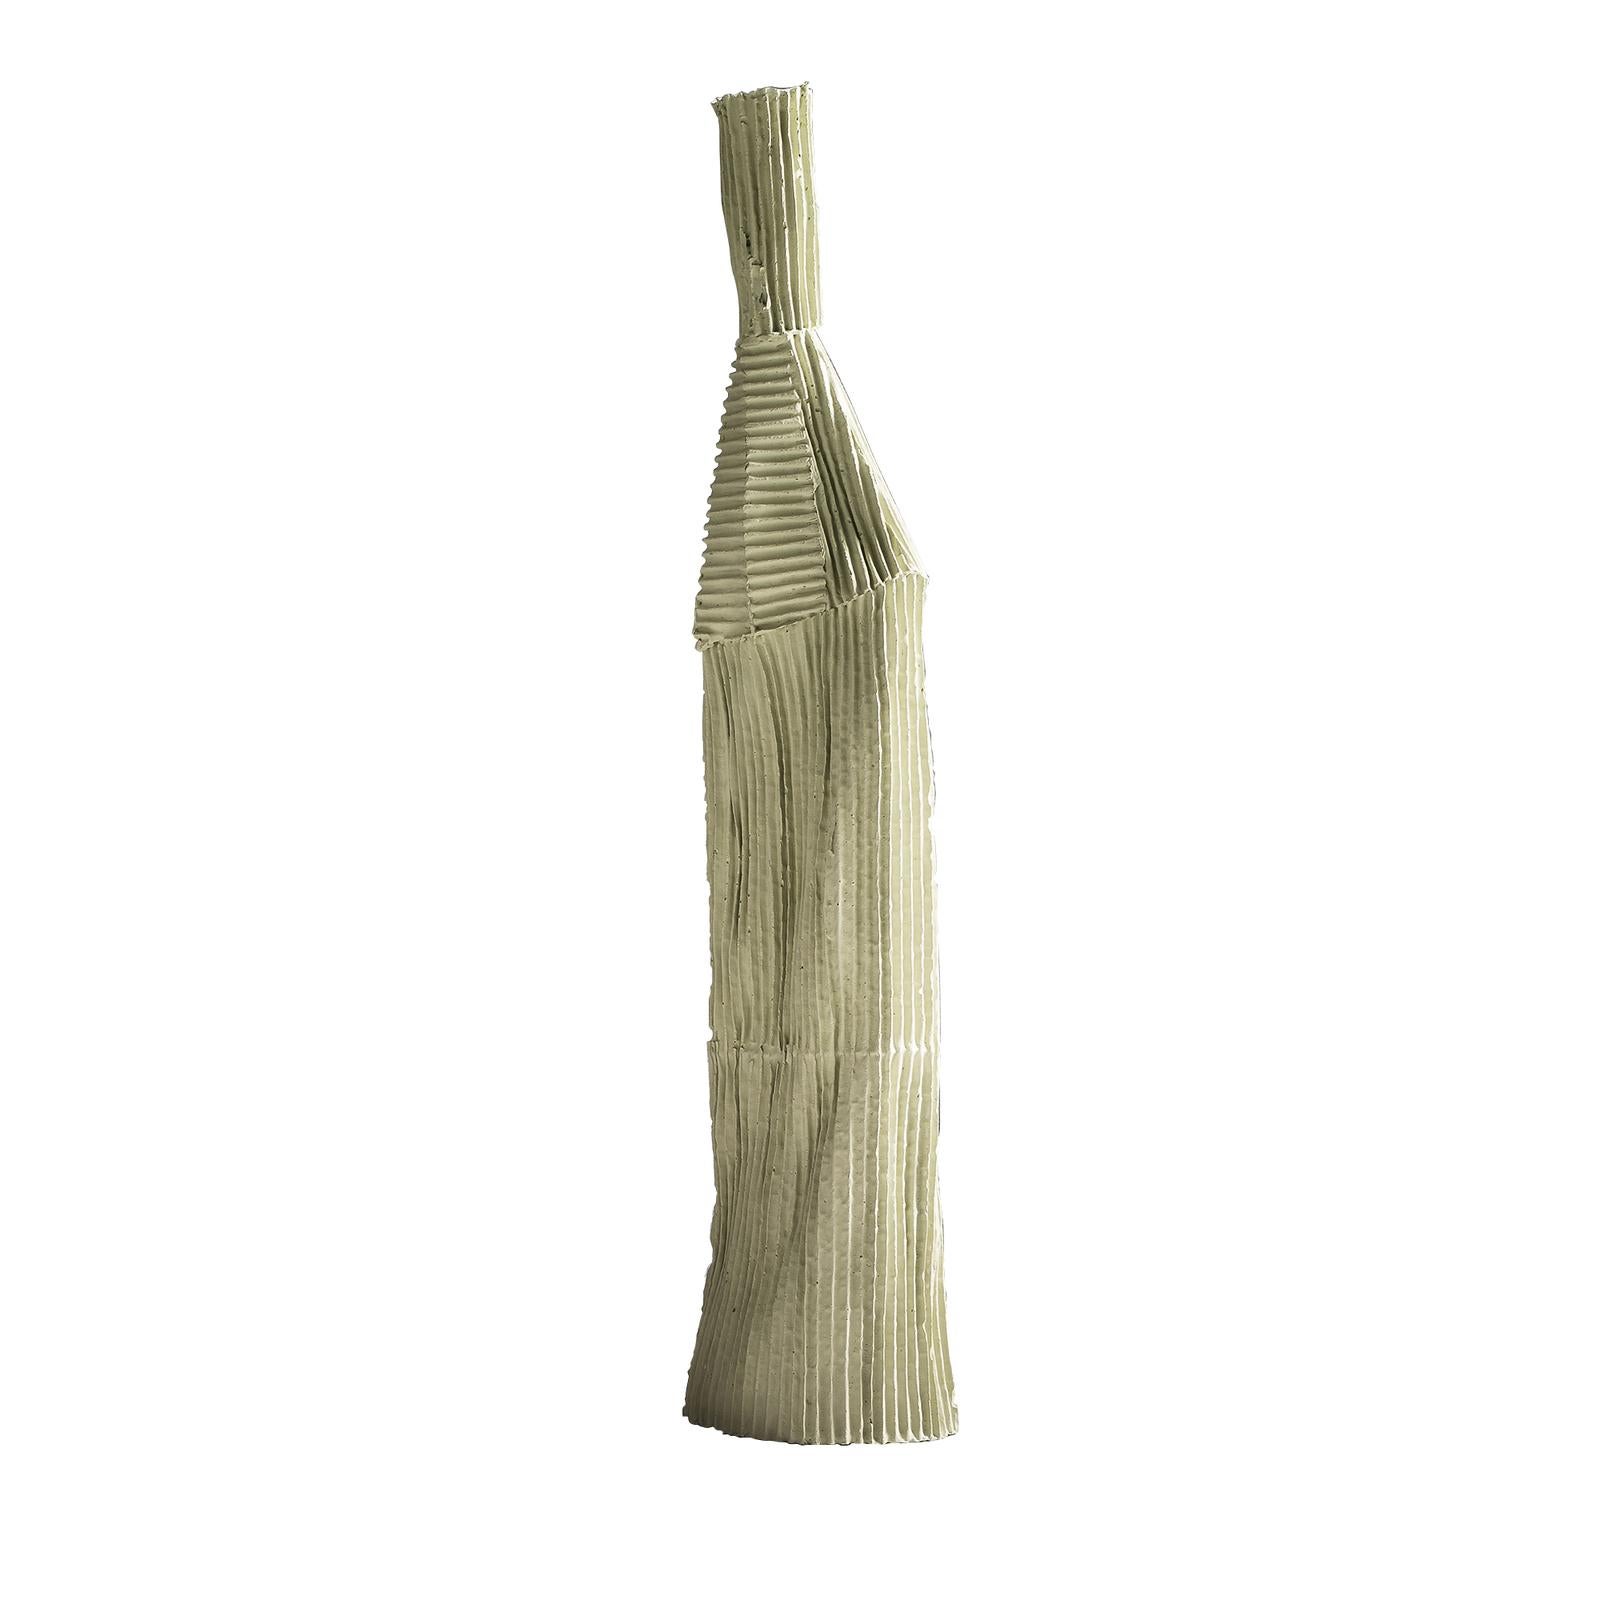 La céramiste Paola Paronetto, qui fait partie de la collection Cartocci, revisite les objets du quotidien avec une touche de modernité dans cette sculpture artisanale en pâte à papier. Ce matériau innovant est composé de fibres naturelles ajoutées à